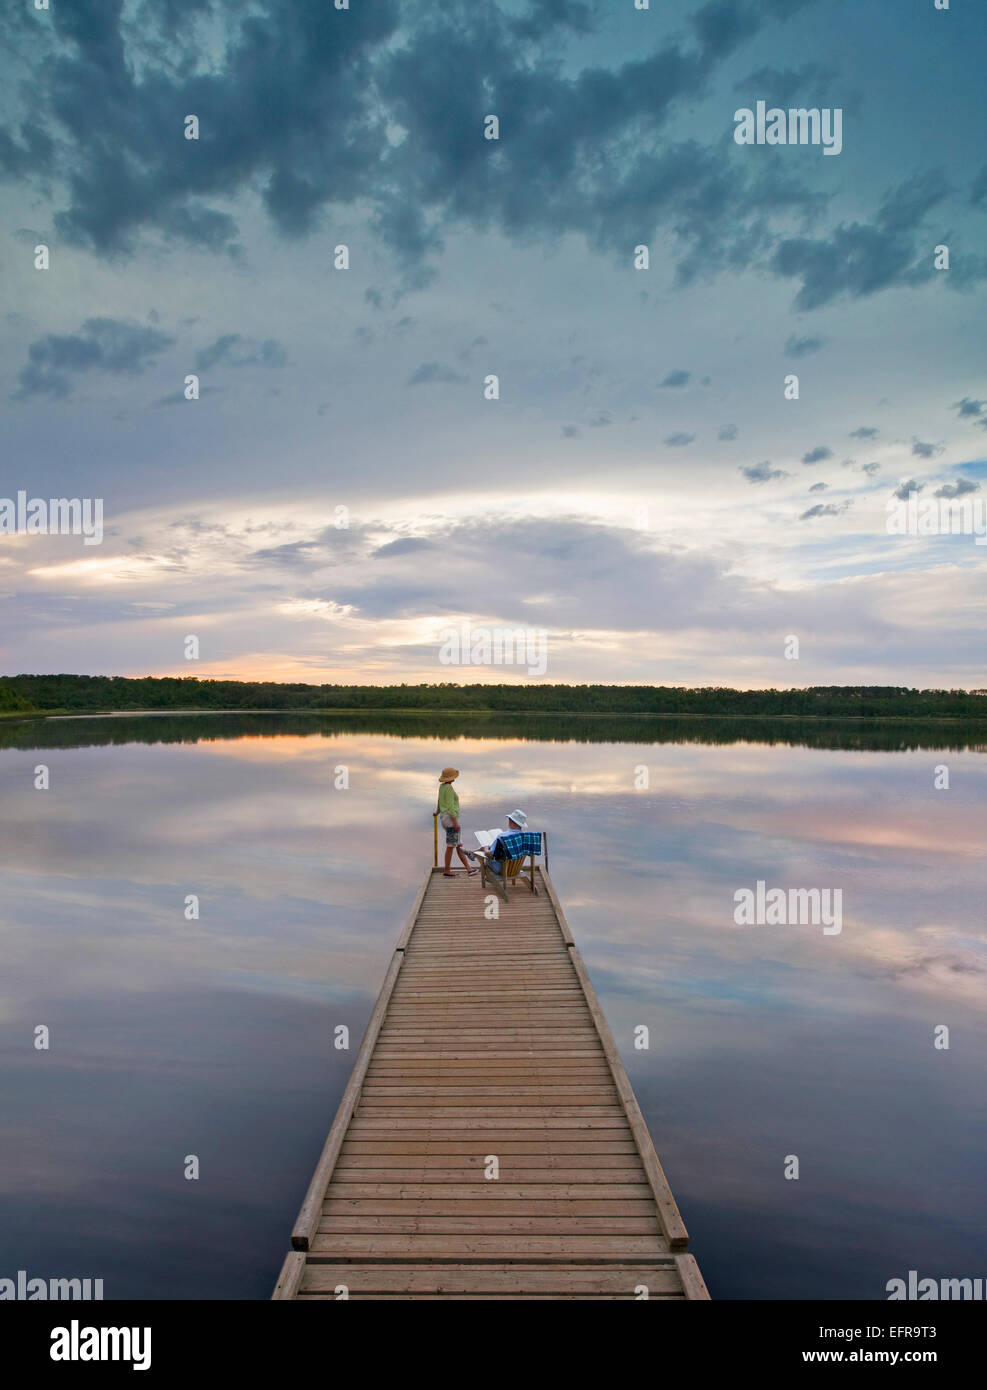 Un couple, homme et femme assis à la fin d'un long quai en bois tendre la main dans un lac calme, au coucher du soleil. Banque D'Images